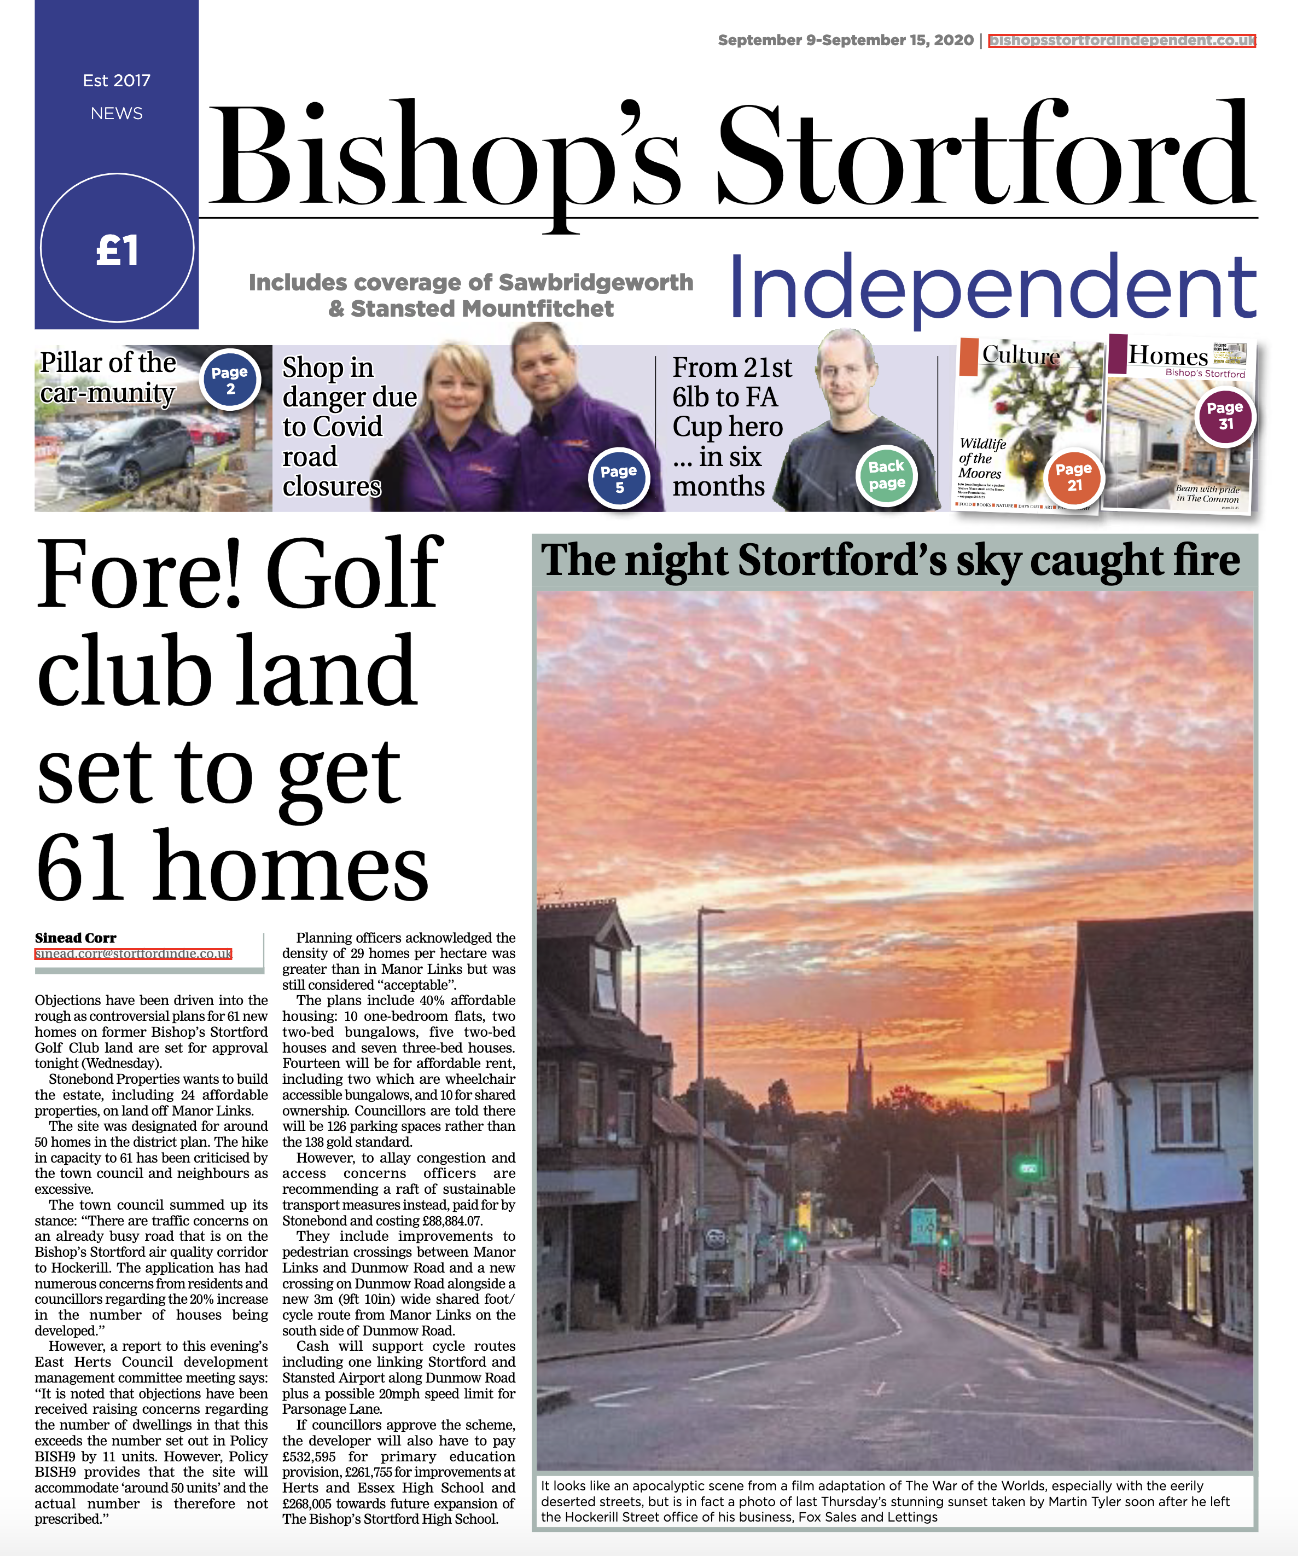 Bishop's Stortford Independent front cover